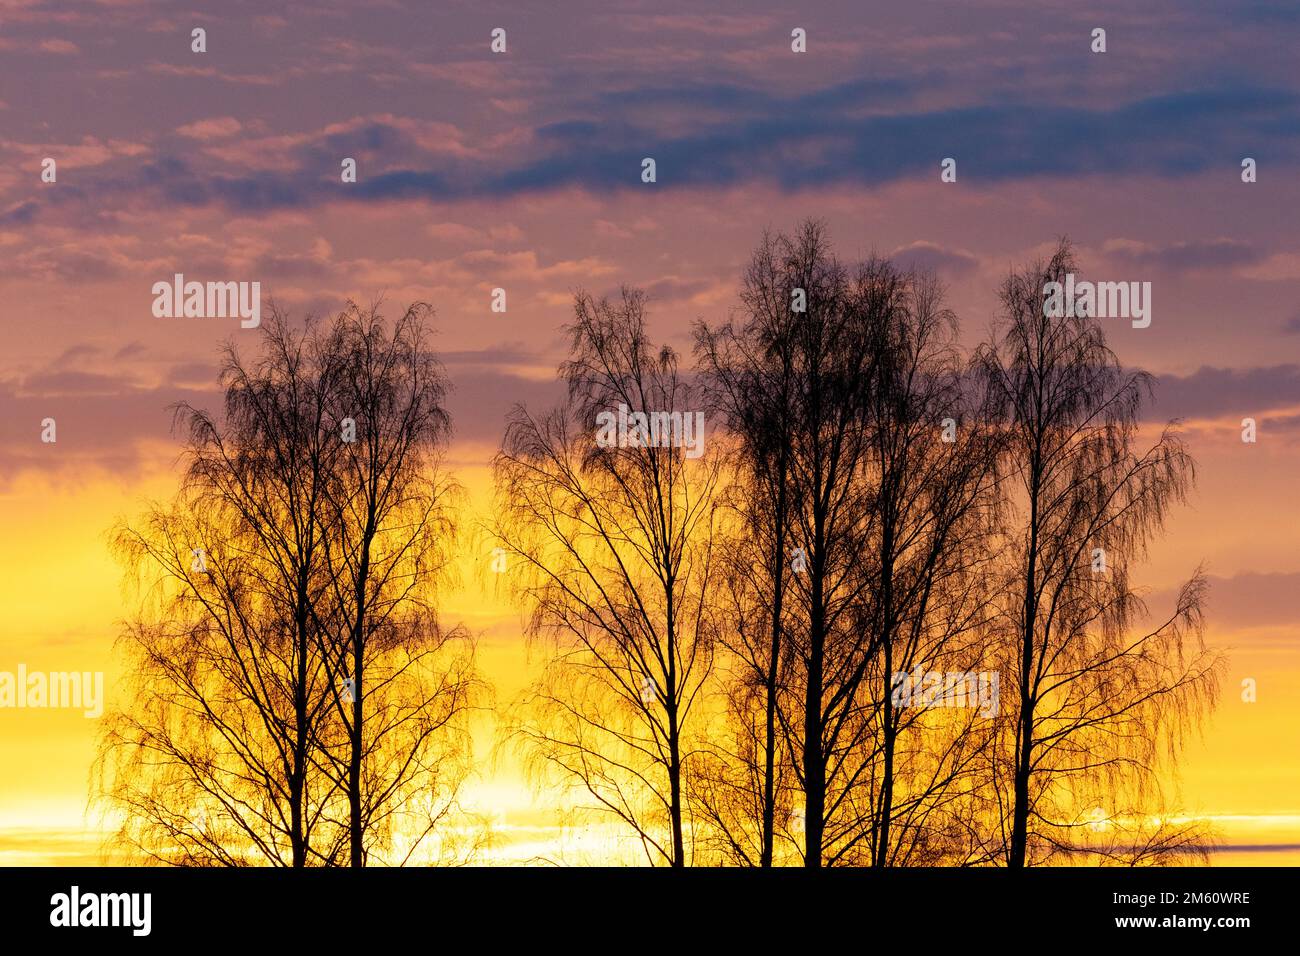 Une silhouette de bouleaux argentés pendant un coucher de soleil coloré et vibrant à la fin d'une soirée d'automne en Estonie, en Europe du Nord Banque D'Images